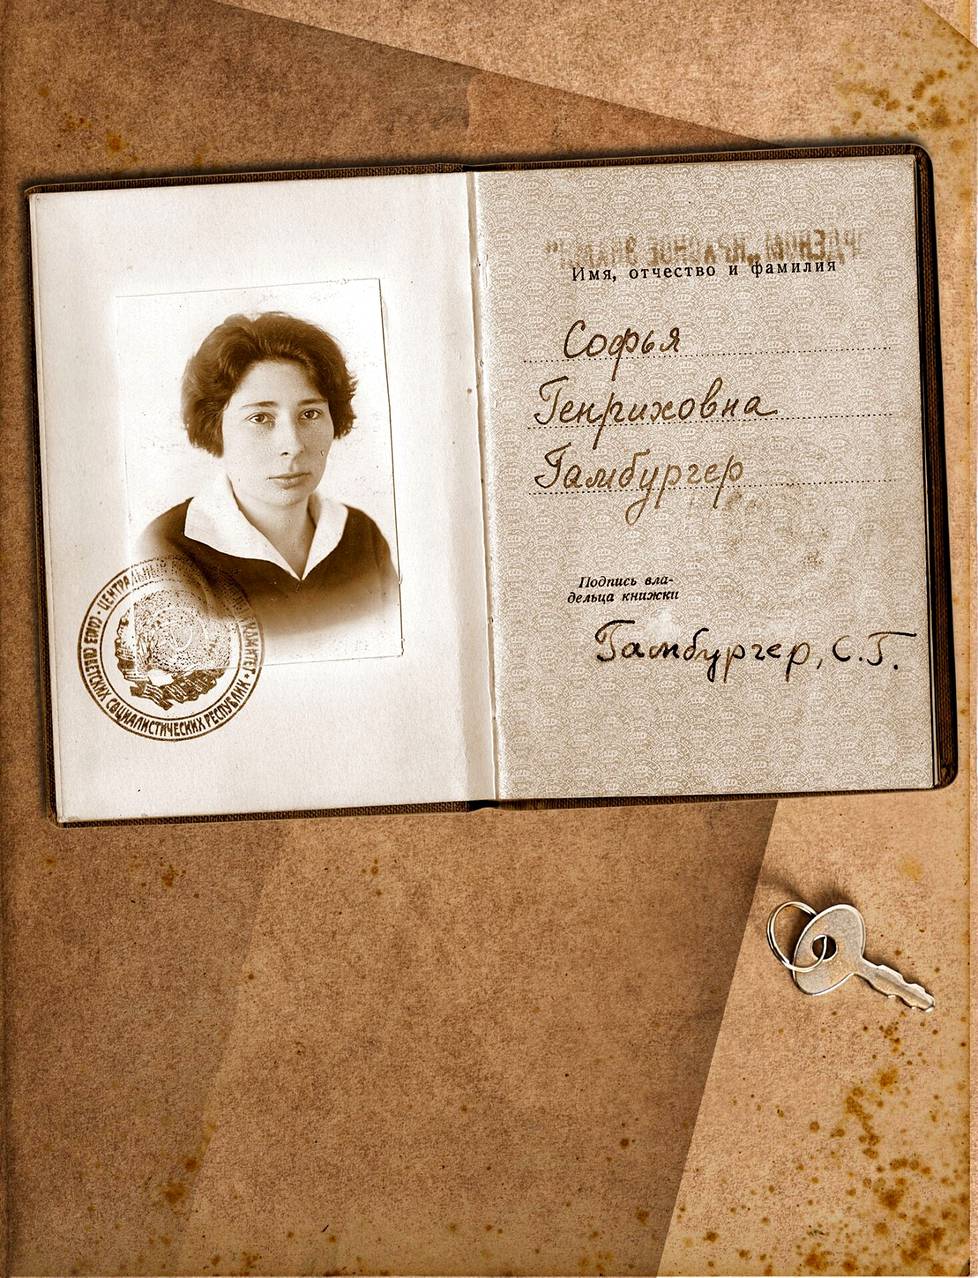 Neuvostoliiton sotilastiedustelun vakoojalle Ursula Hamburgerille (omaa sukua Kuczynski) eli koodinimi Sonjalle myönnettiin merkittävä punalippu-kunniamerkki Moskovassa vuonna 1937.